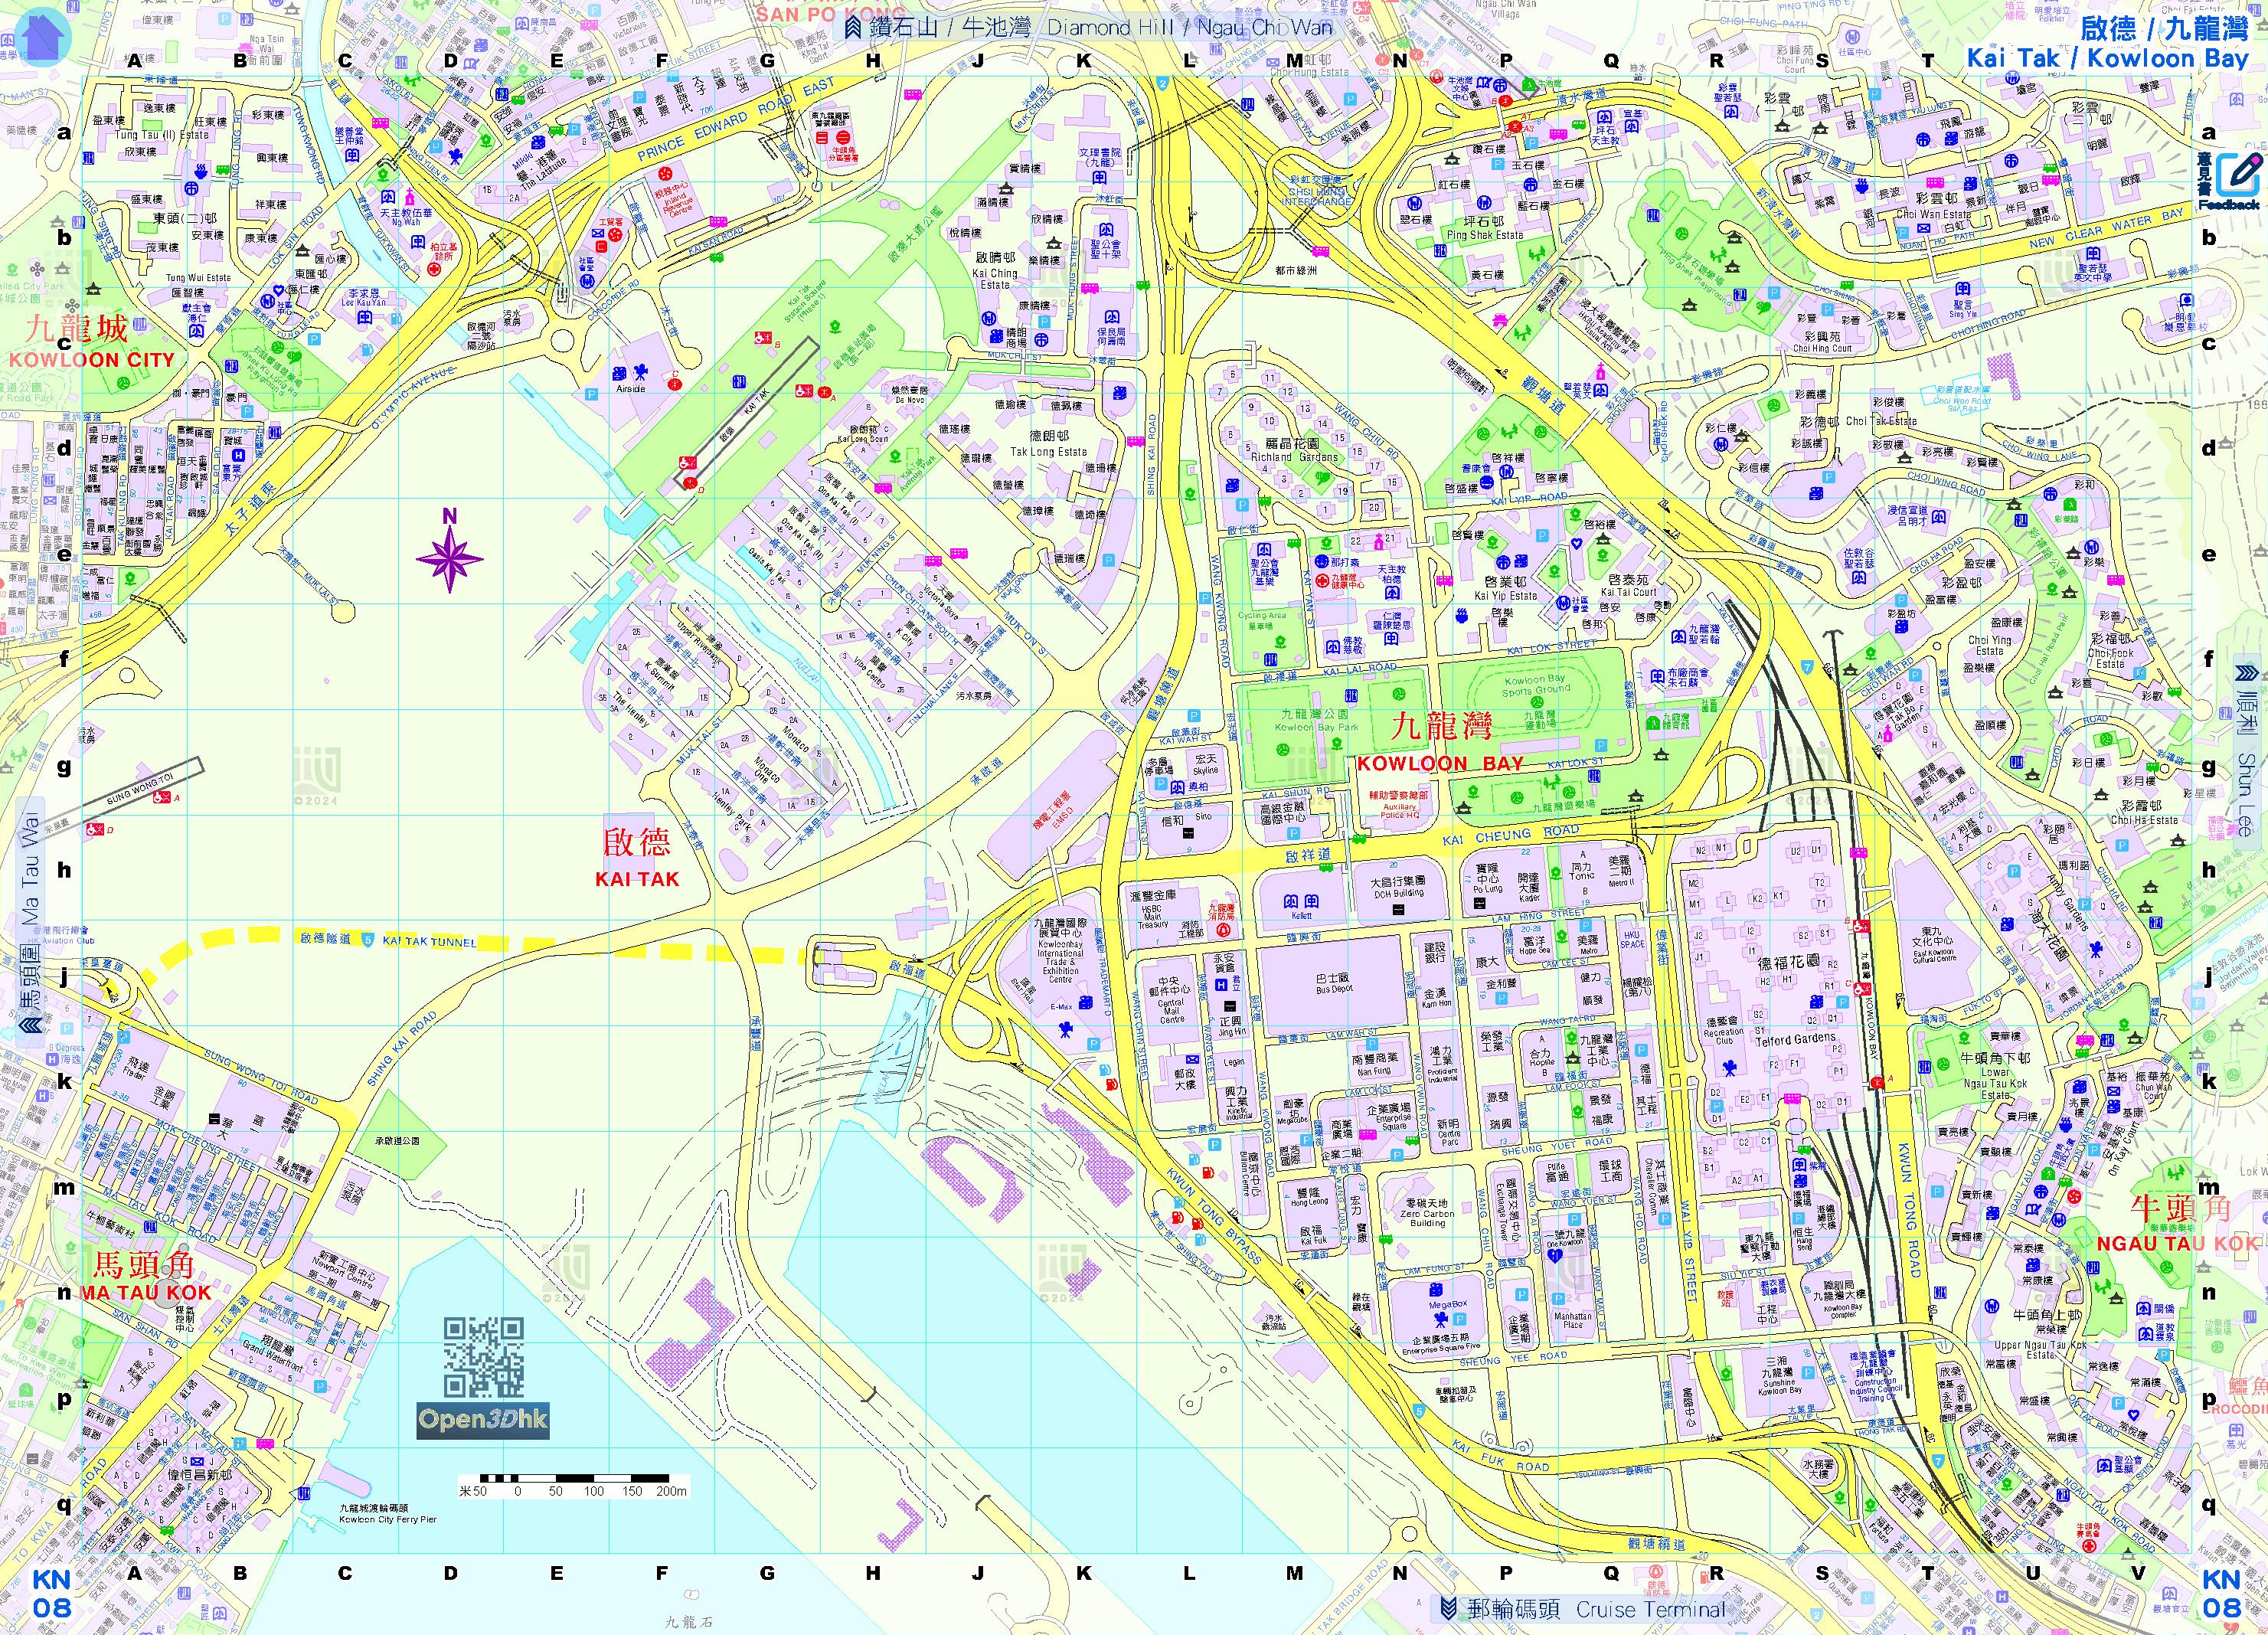 二○二四年《e香港街》今日（一月二十四日）起可免费下载，当中载有详尽的香港地图。图示启德及九龙湾一带的地图页面。